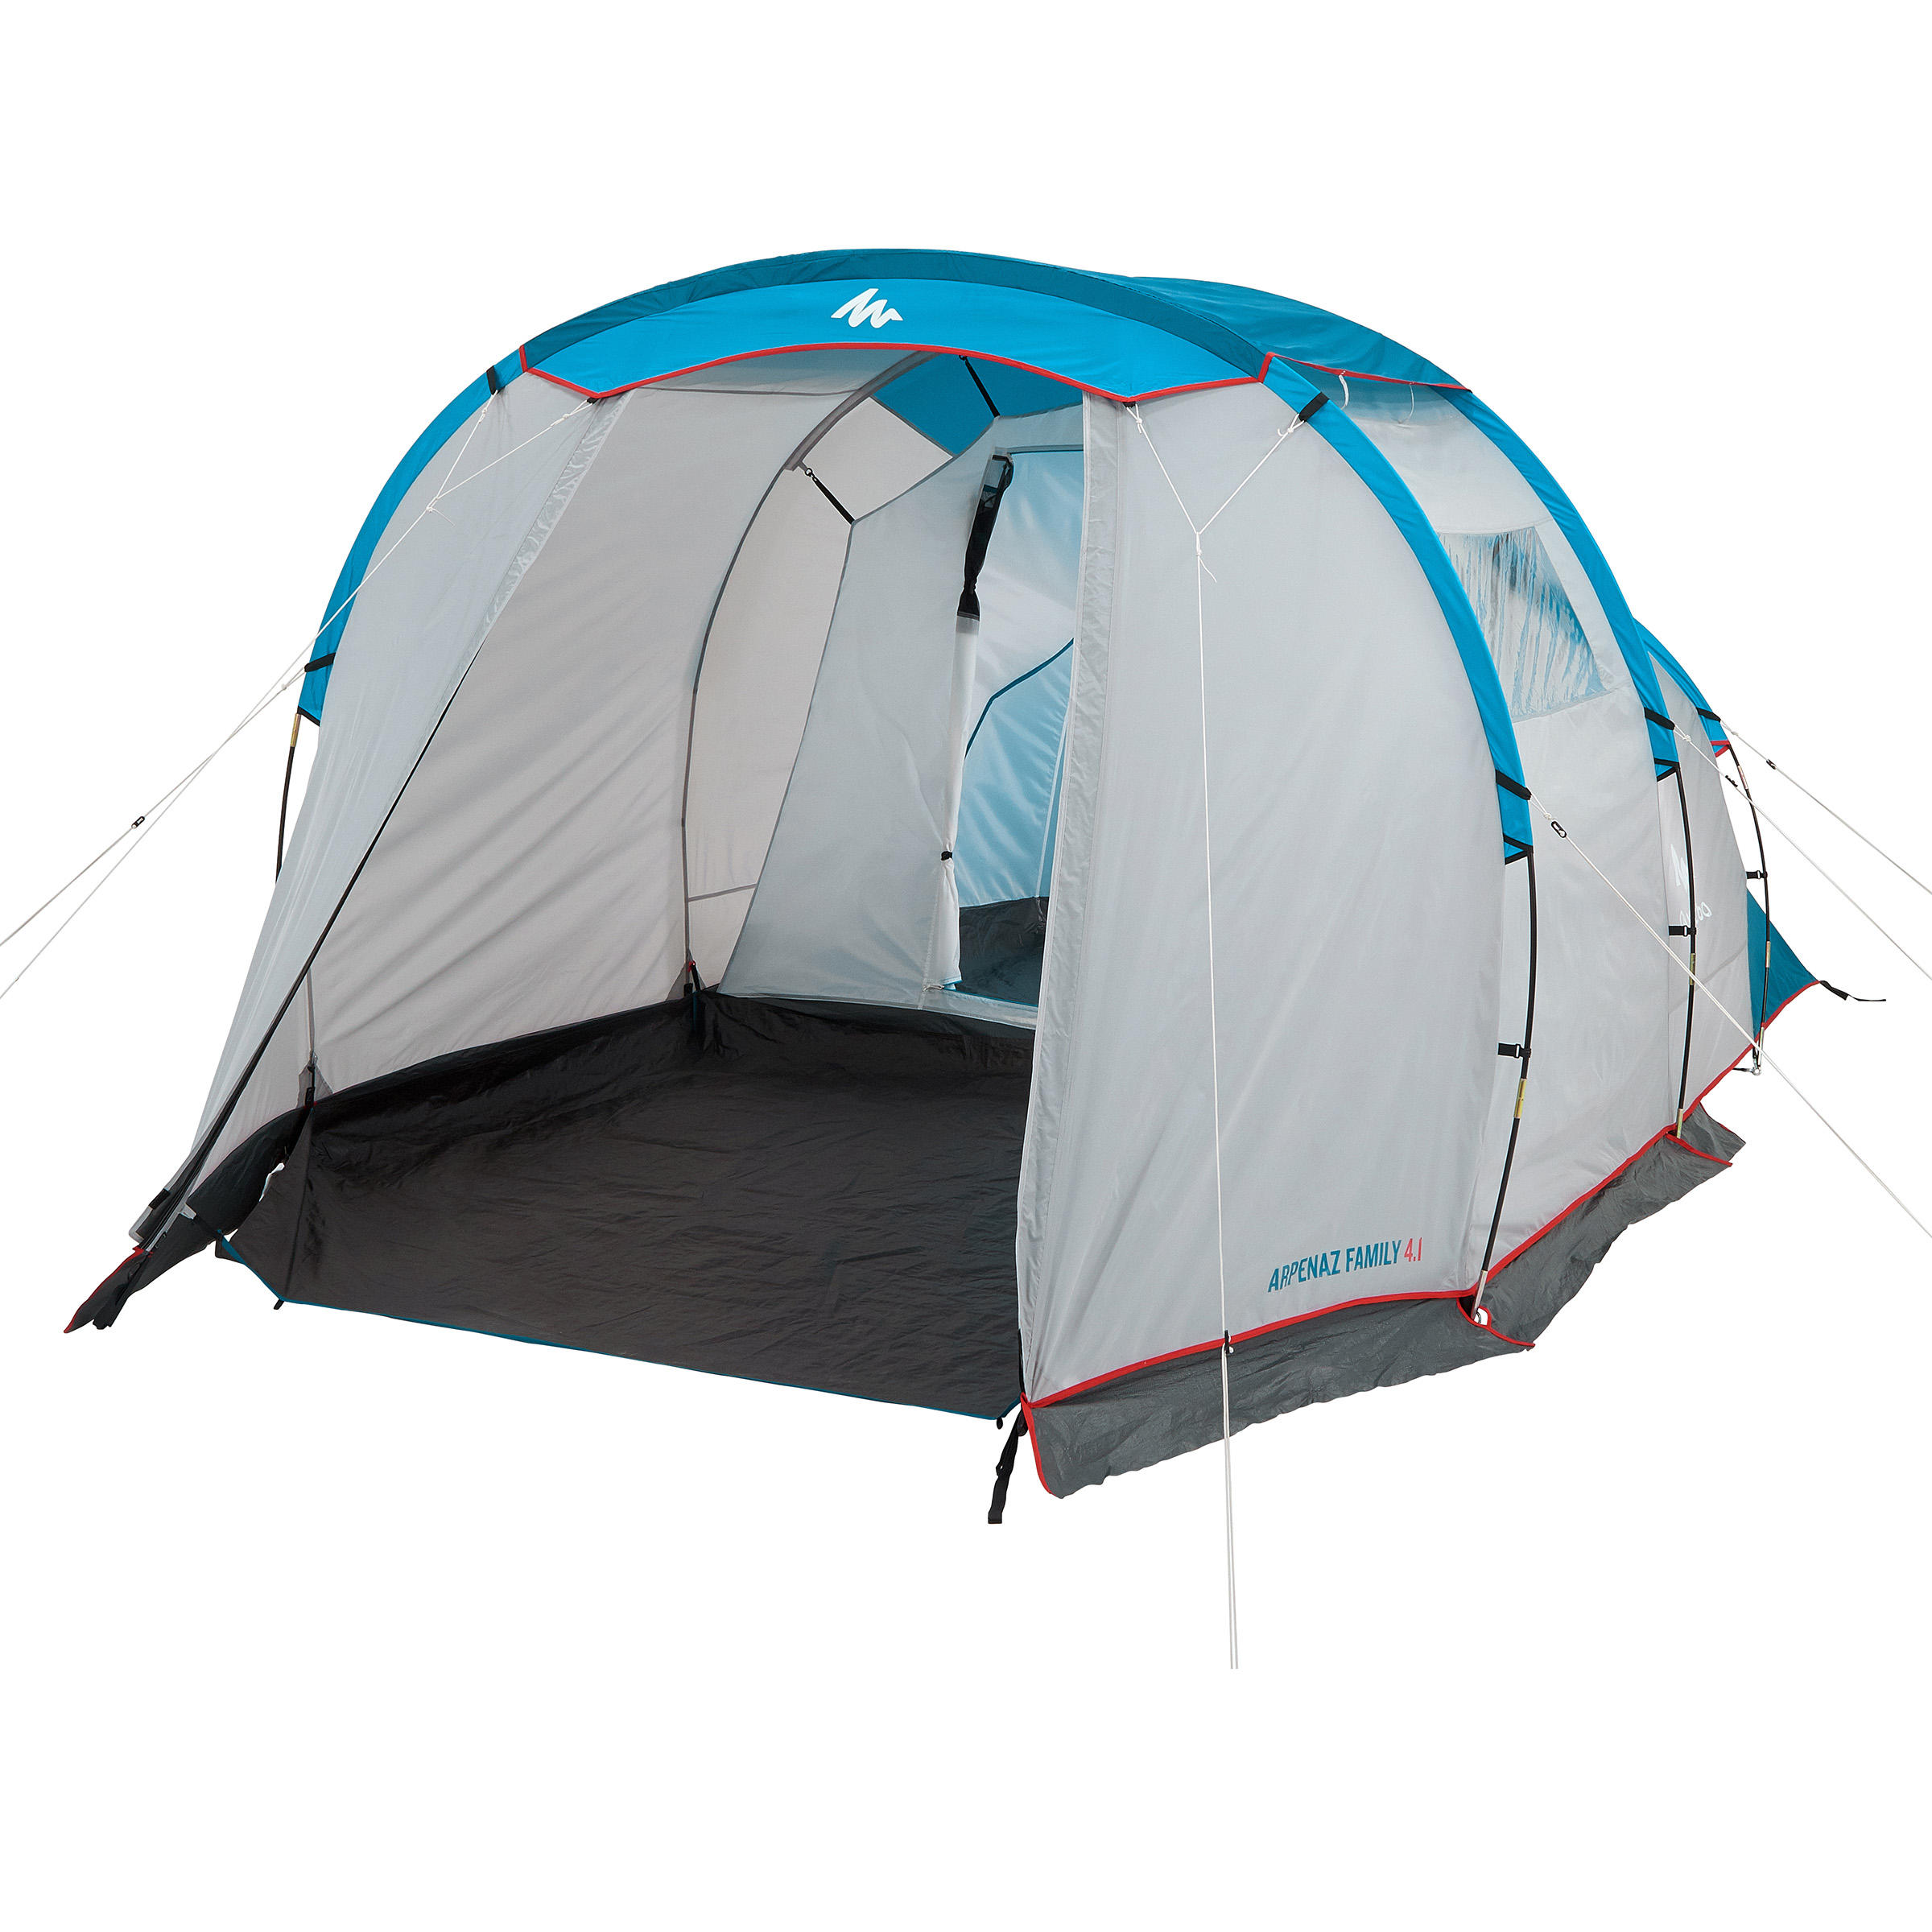 methodologie registreren Huisje NATURE HIKING CAMPING Tent with poles - Arpenaz 4.1 - 4-man - 1 Bedroom